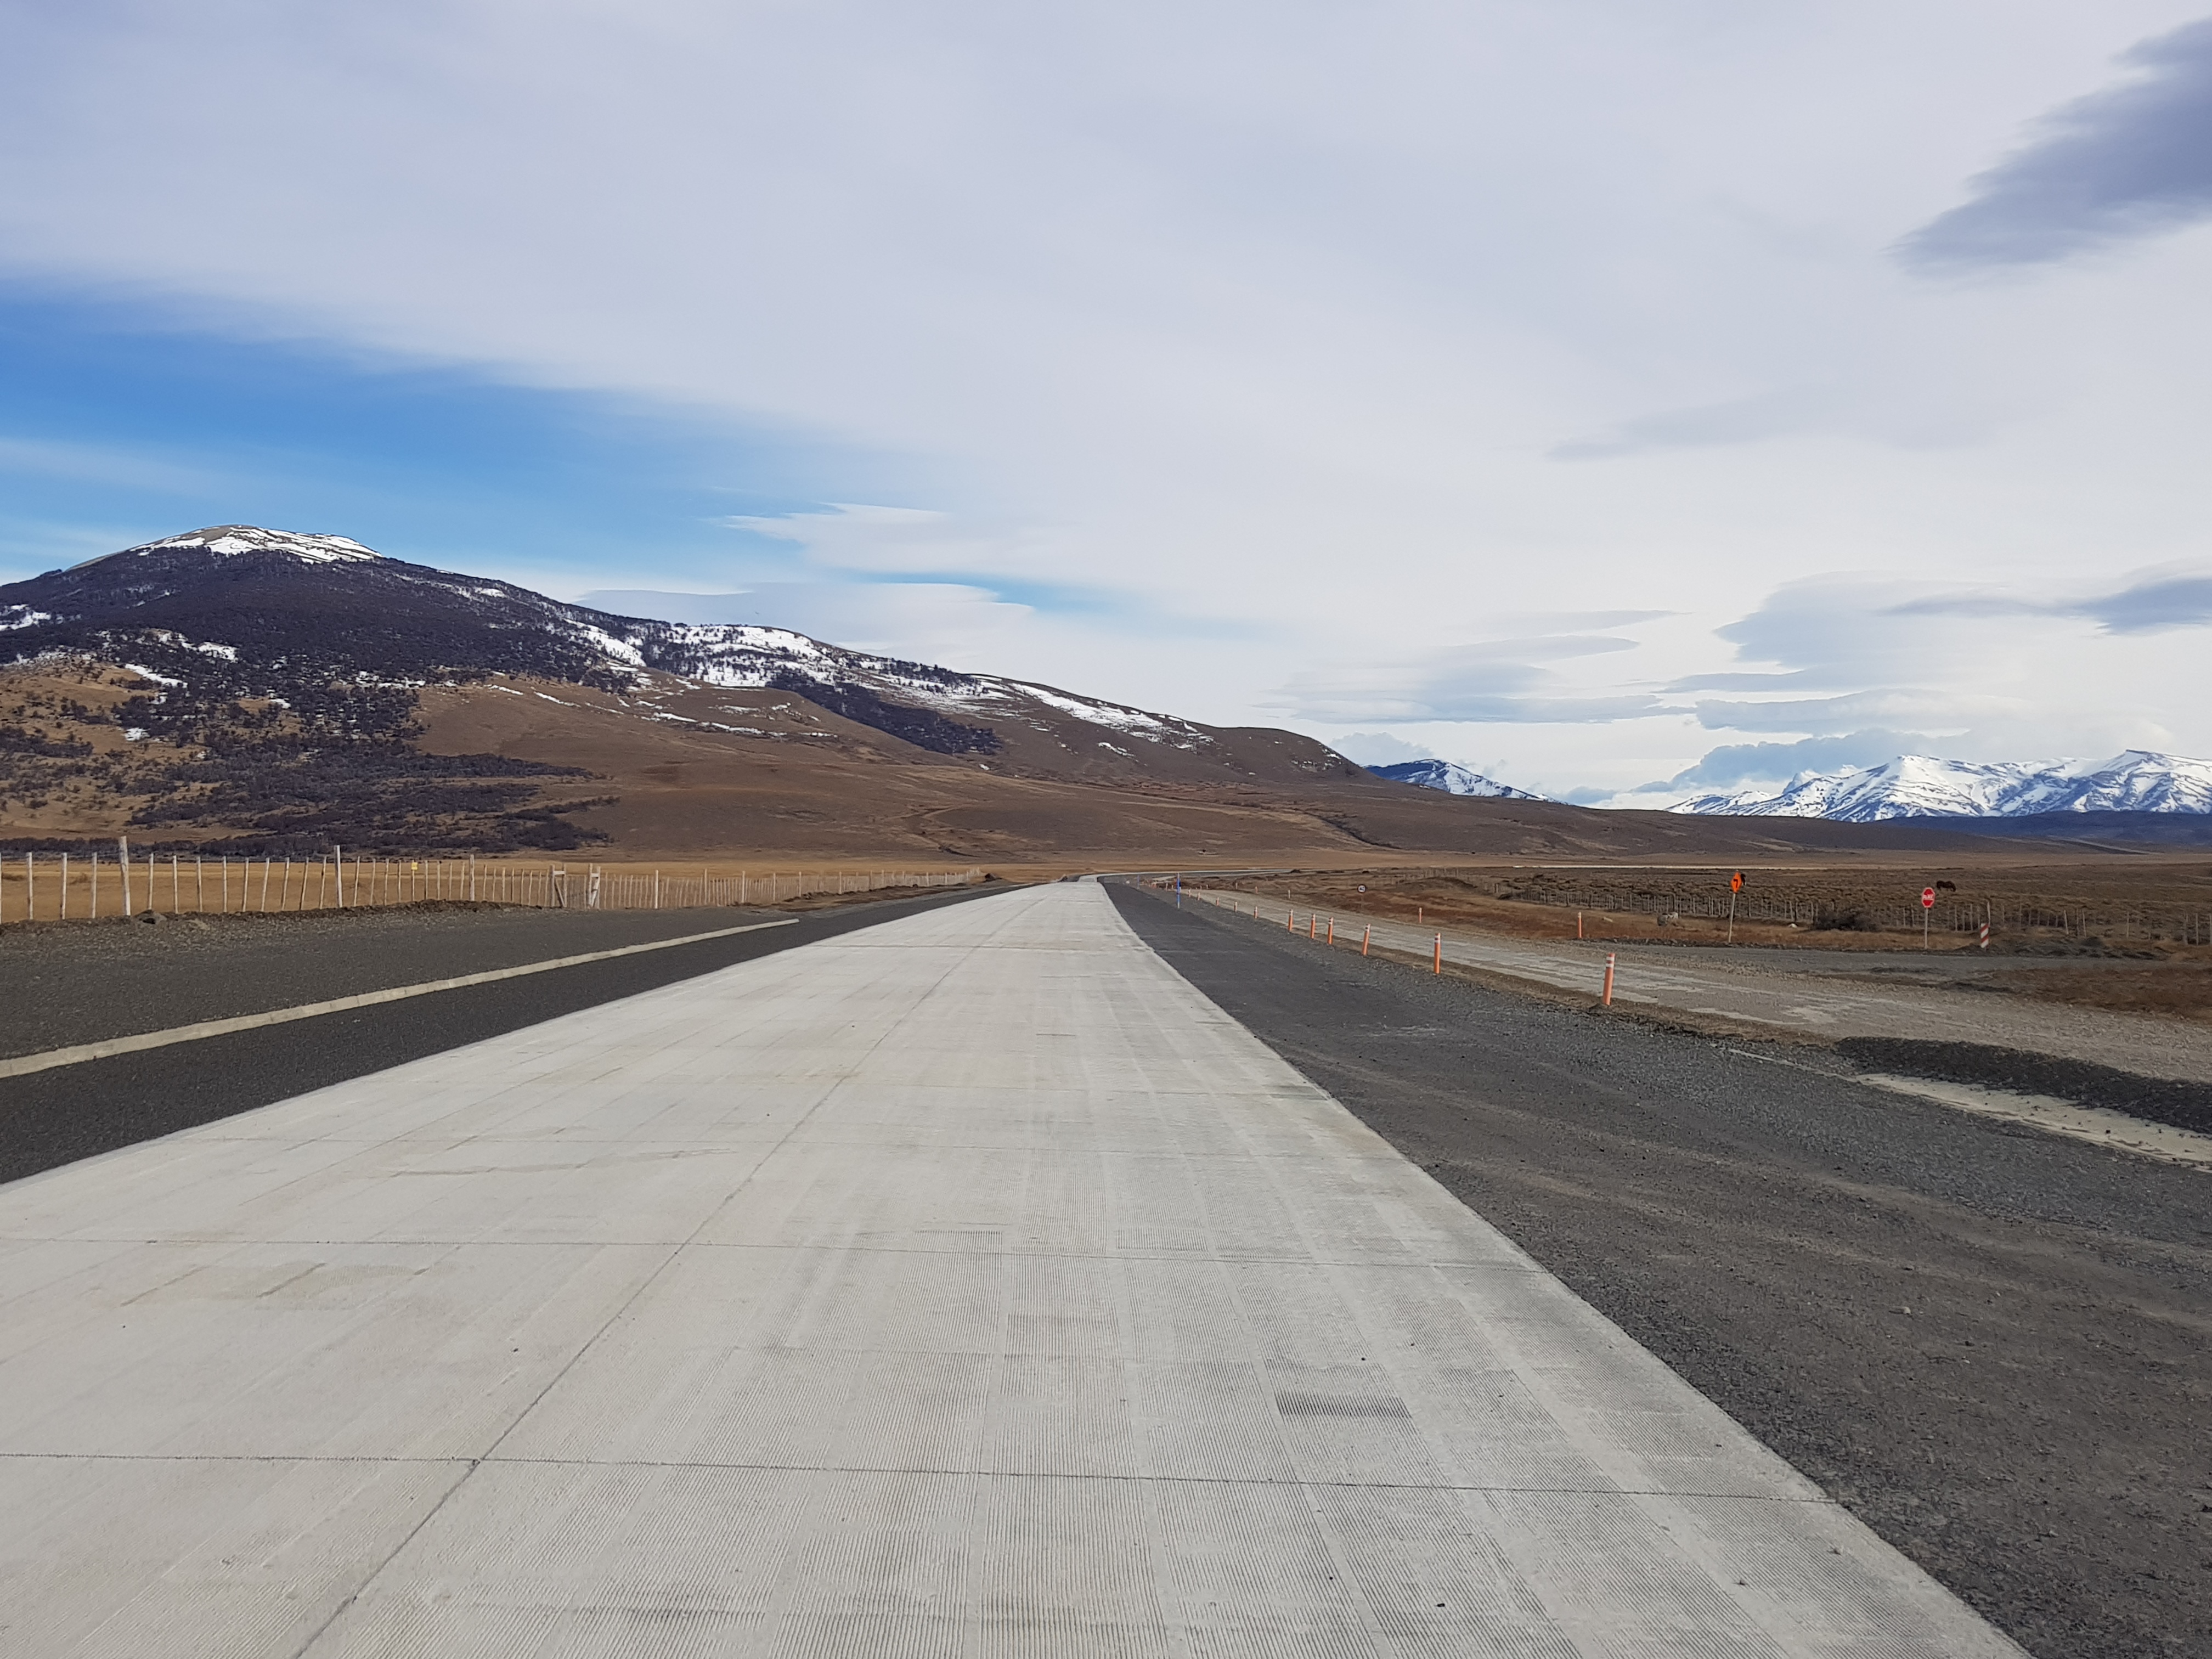 Avanza proyecto para pavimentar nuevos 17 kilómetros desde Cerro Castillo hacia el Parque Nacional Torres del Paine